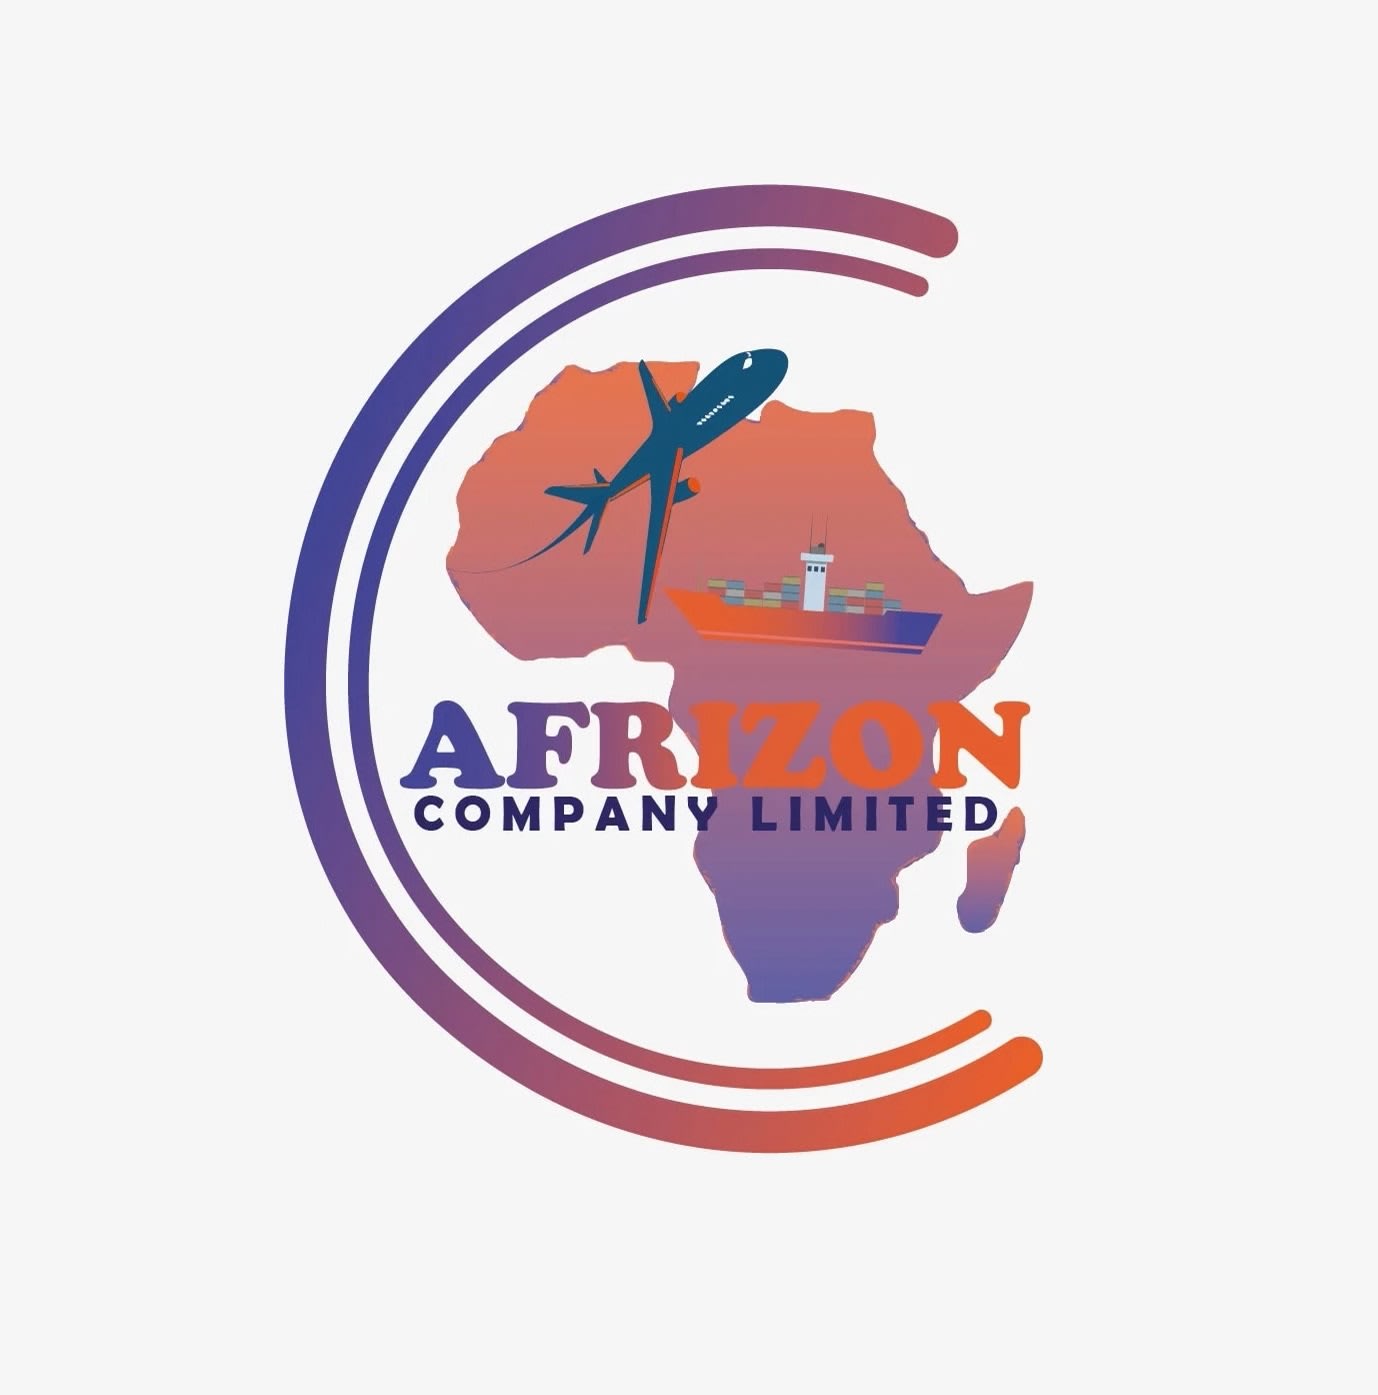 Afrizon Company